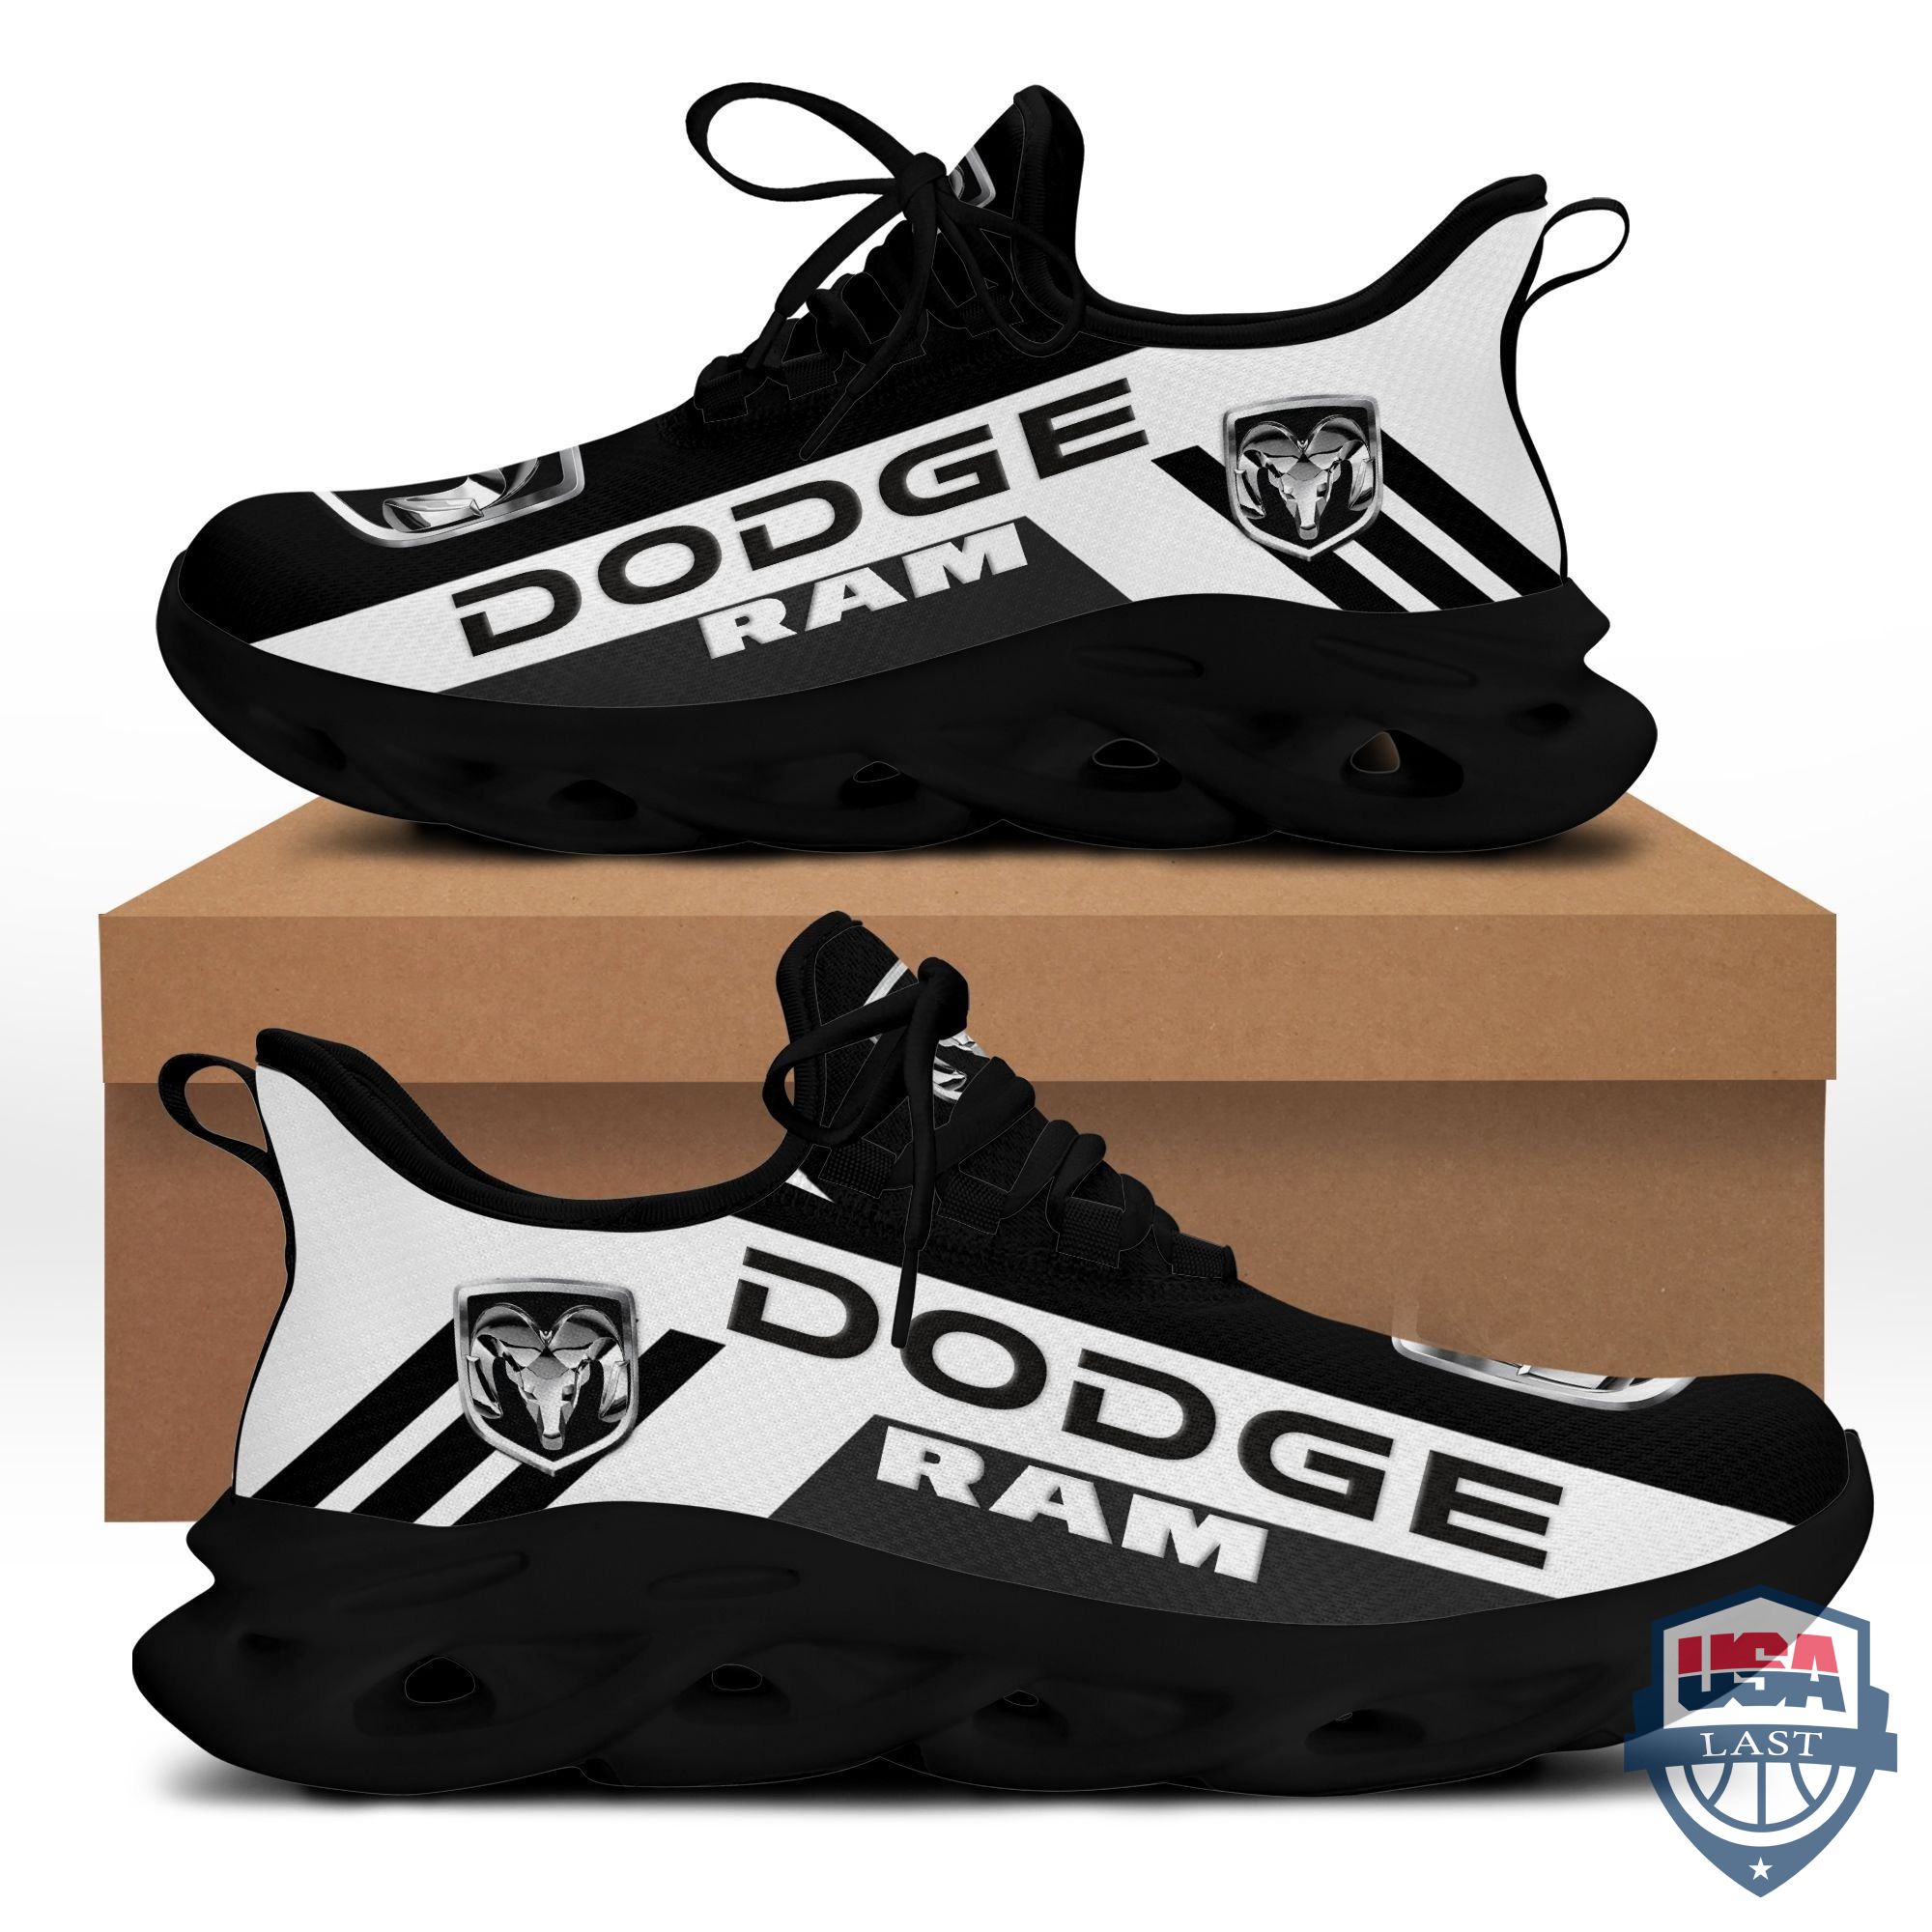 Dodge Ram Max Soul Shoes Black Version